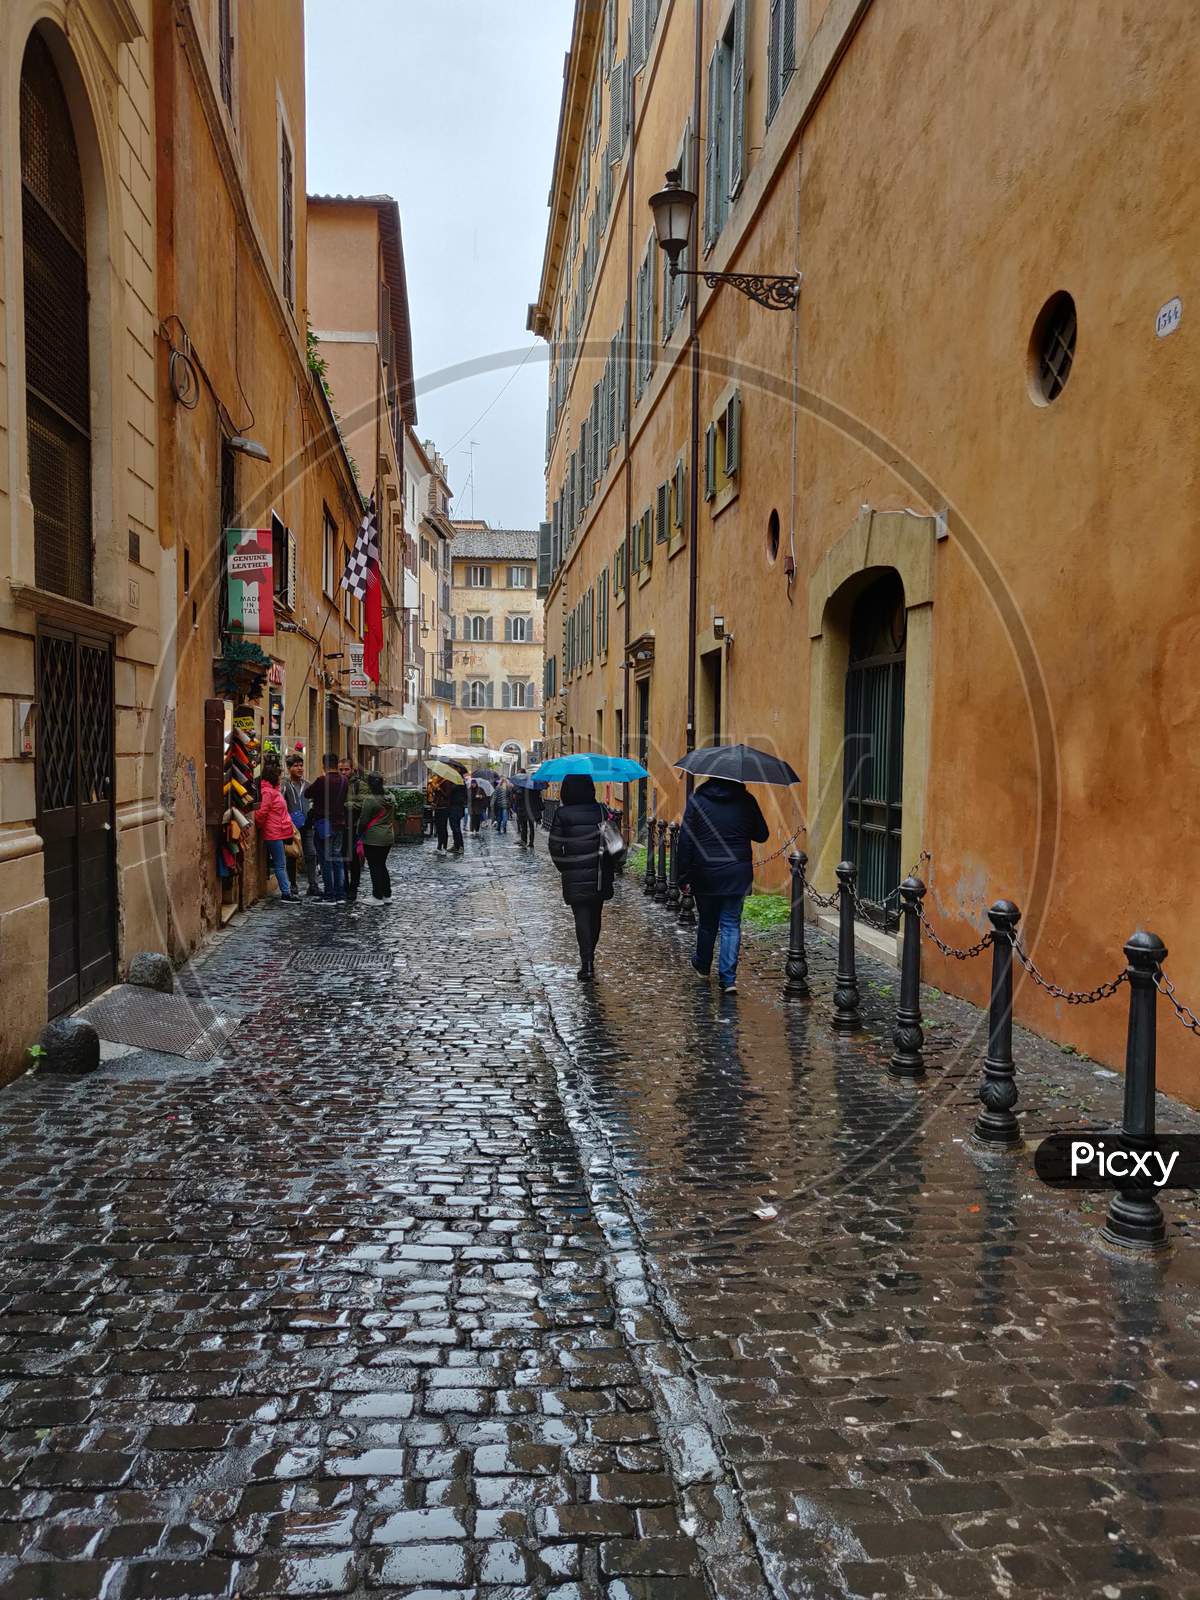 People walking in the rain with umbrella in Via dei Giustiniani